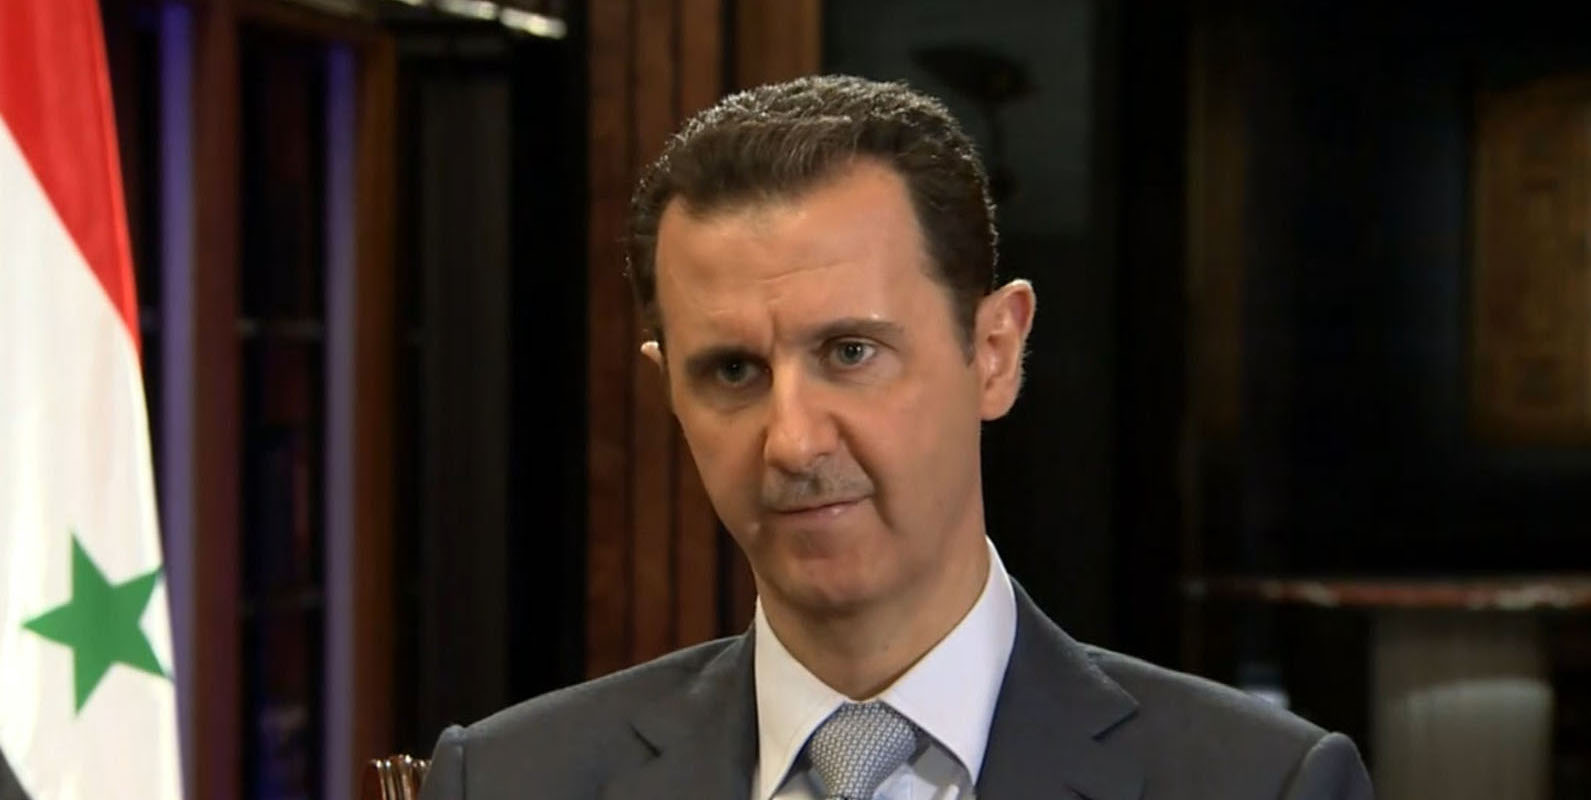 Συρία: Ο Μπ. αλ-Άσαντ επισκέφθηκε θέσεις του στρατού στην Ανατολική Γούτα (φωτό)